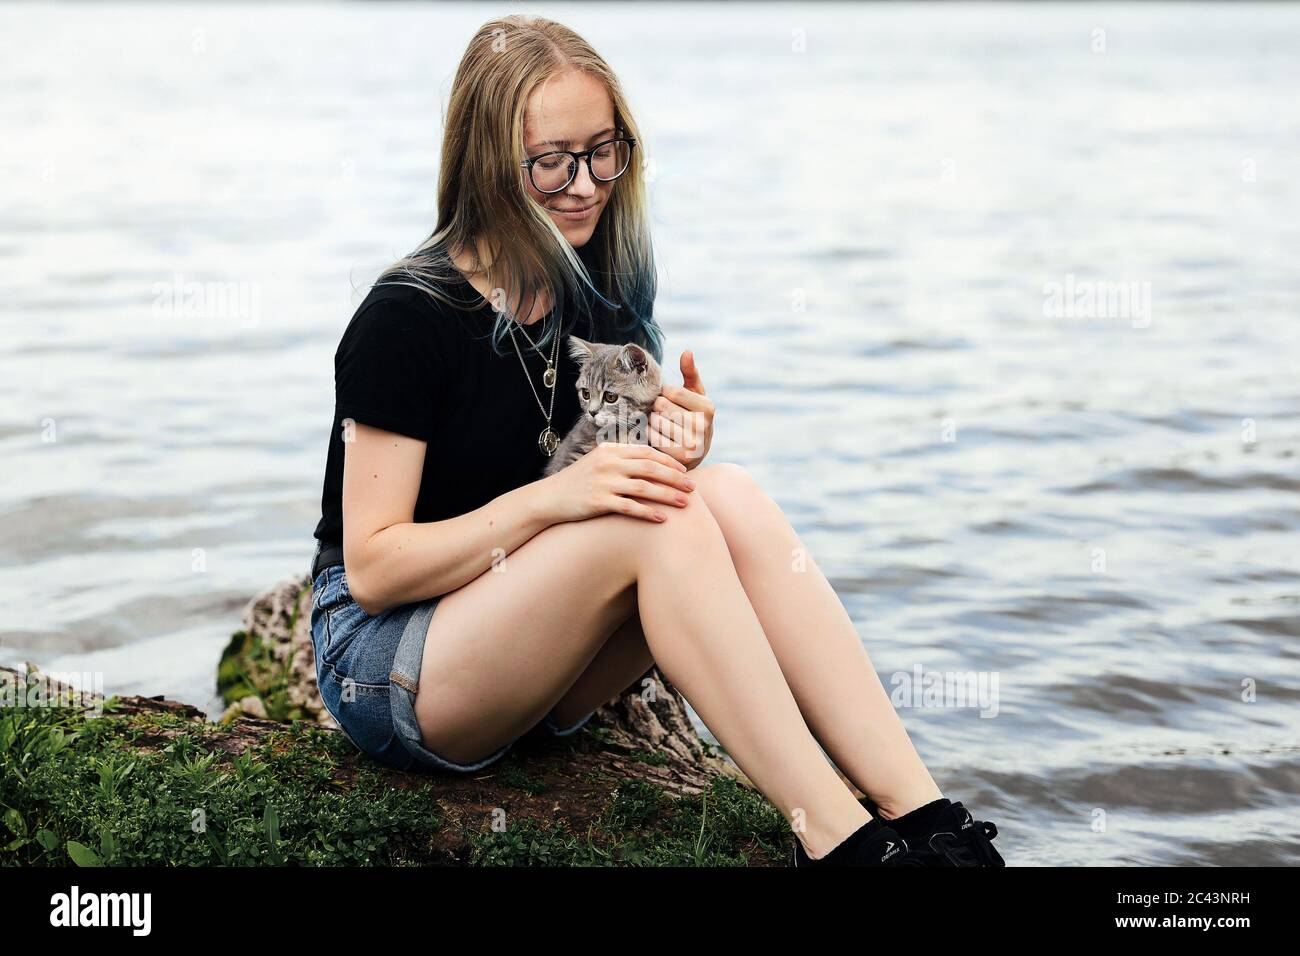 Jeune femme blonde aux cheveux bleus, portant des lunettes, un short en denim et un t-shirt noir. Assis sur un arbre flottant près du lac avec un vieux de trois mois Banque D'Images